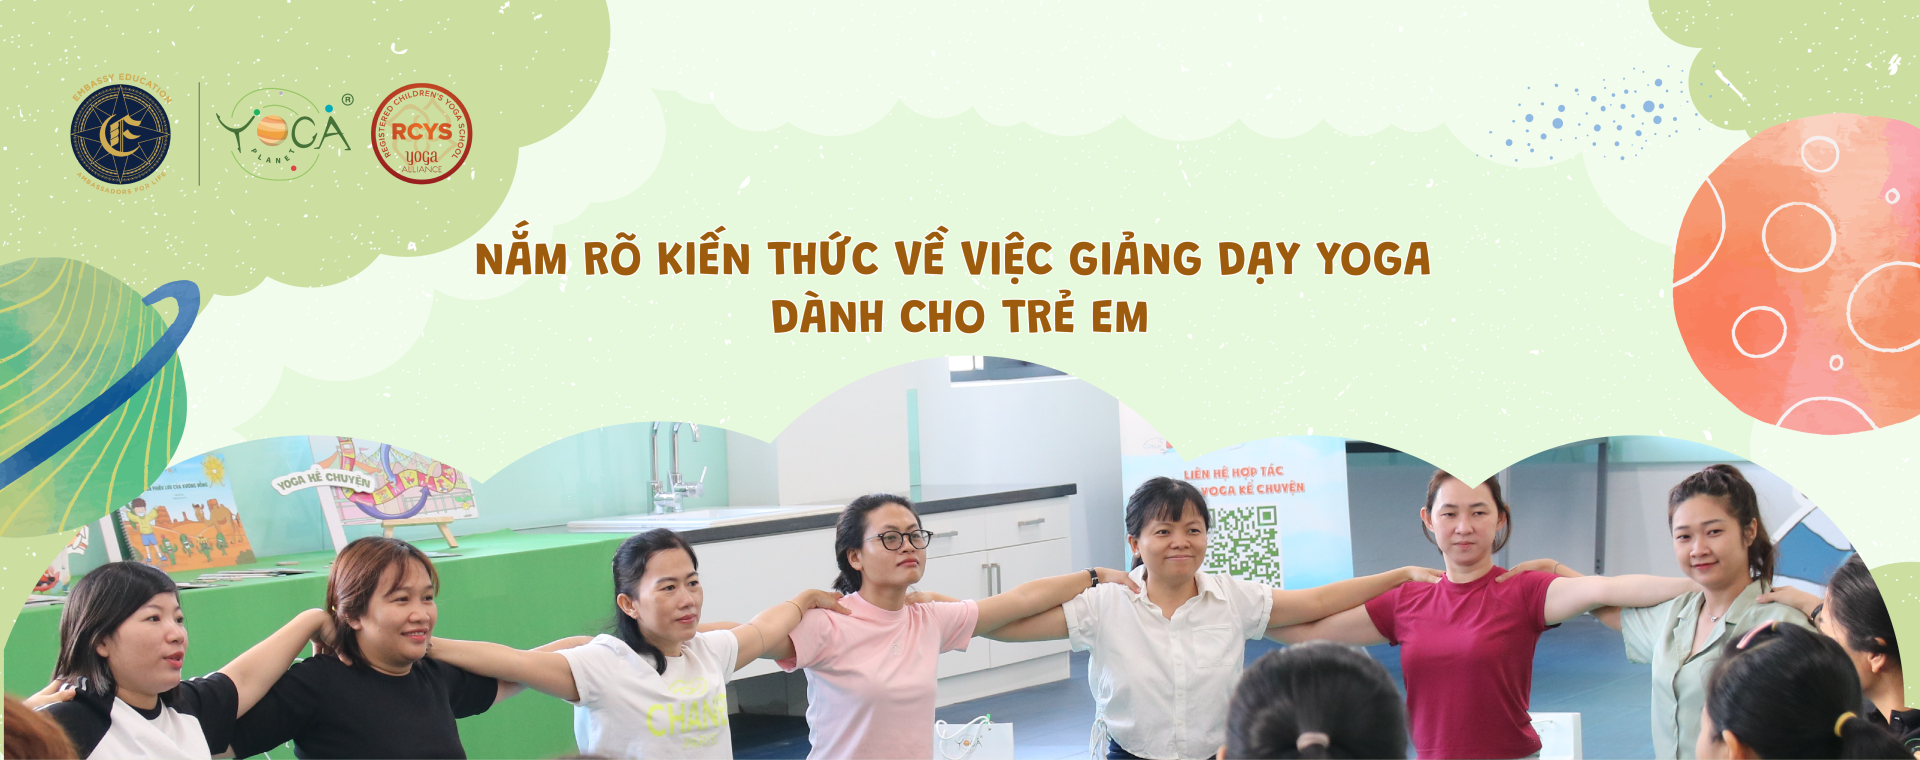 Khóa Đào tạo Giáo viên Yoga Kể Chuyện dành cho Trẻ em thành phố Hồ Chí Minh cùng các chuyên gia ​